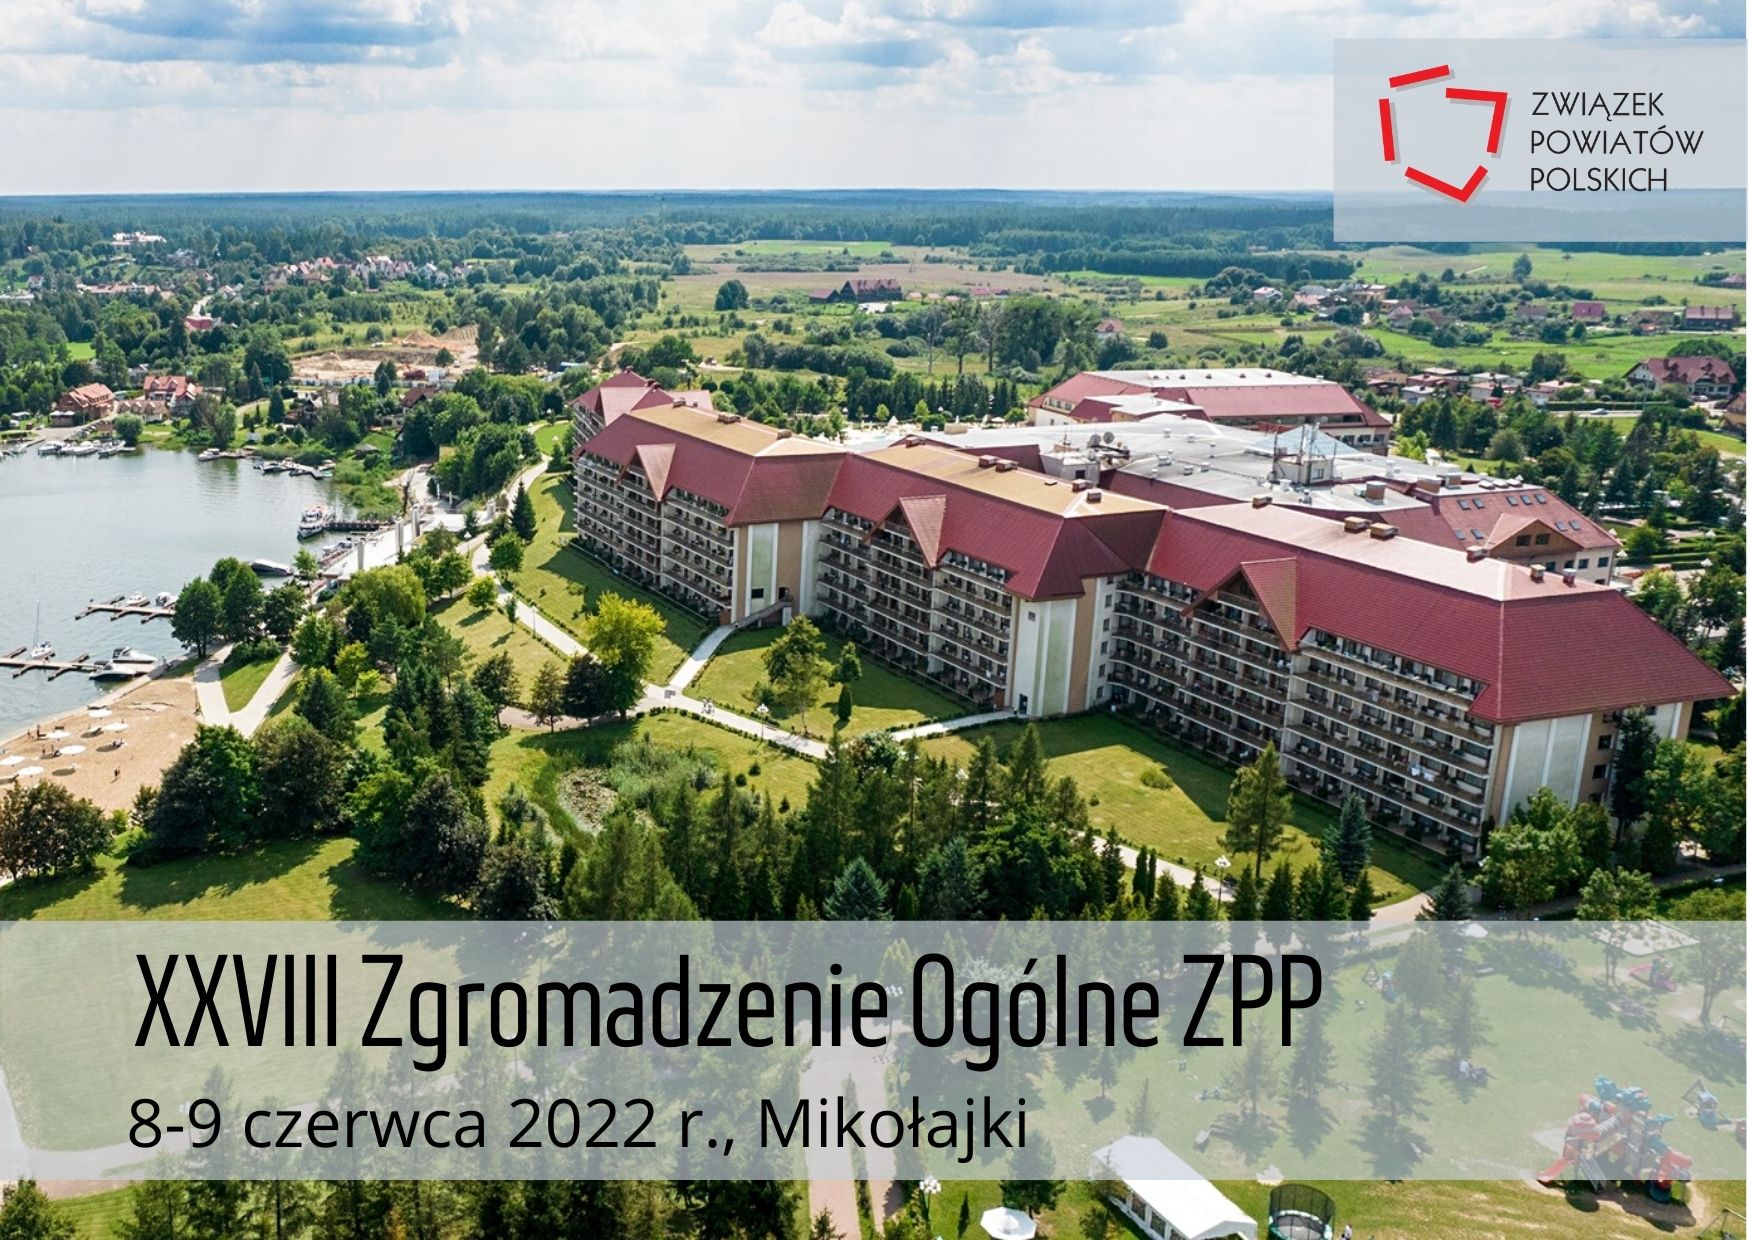 XXVIII Zgromadzenie Ogólne Związku Powiatów Polskich